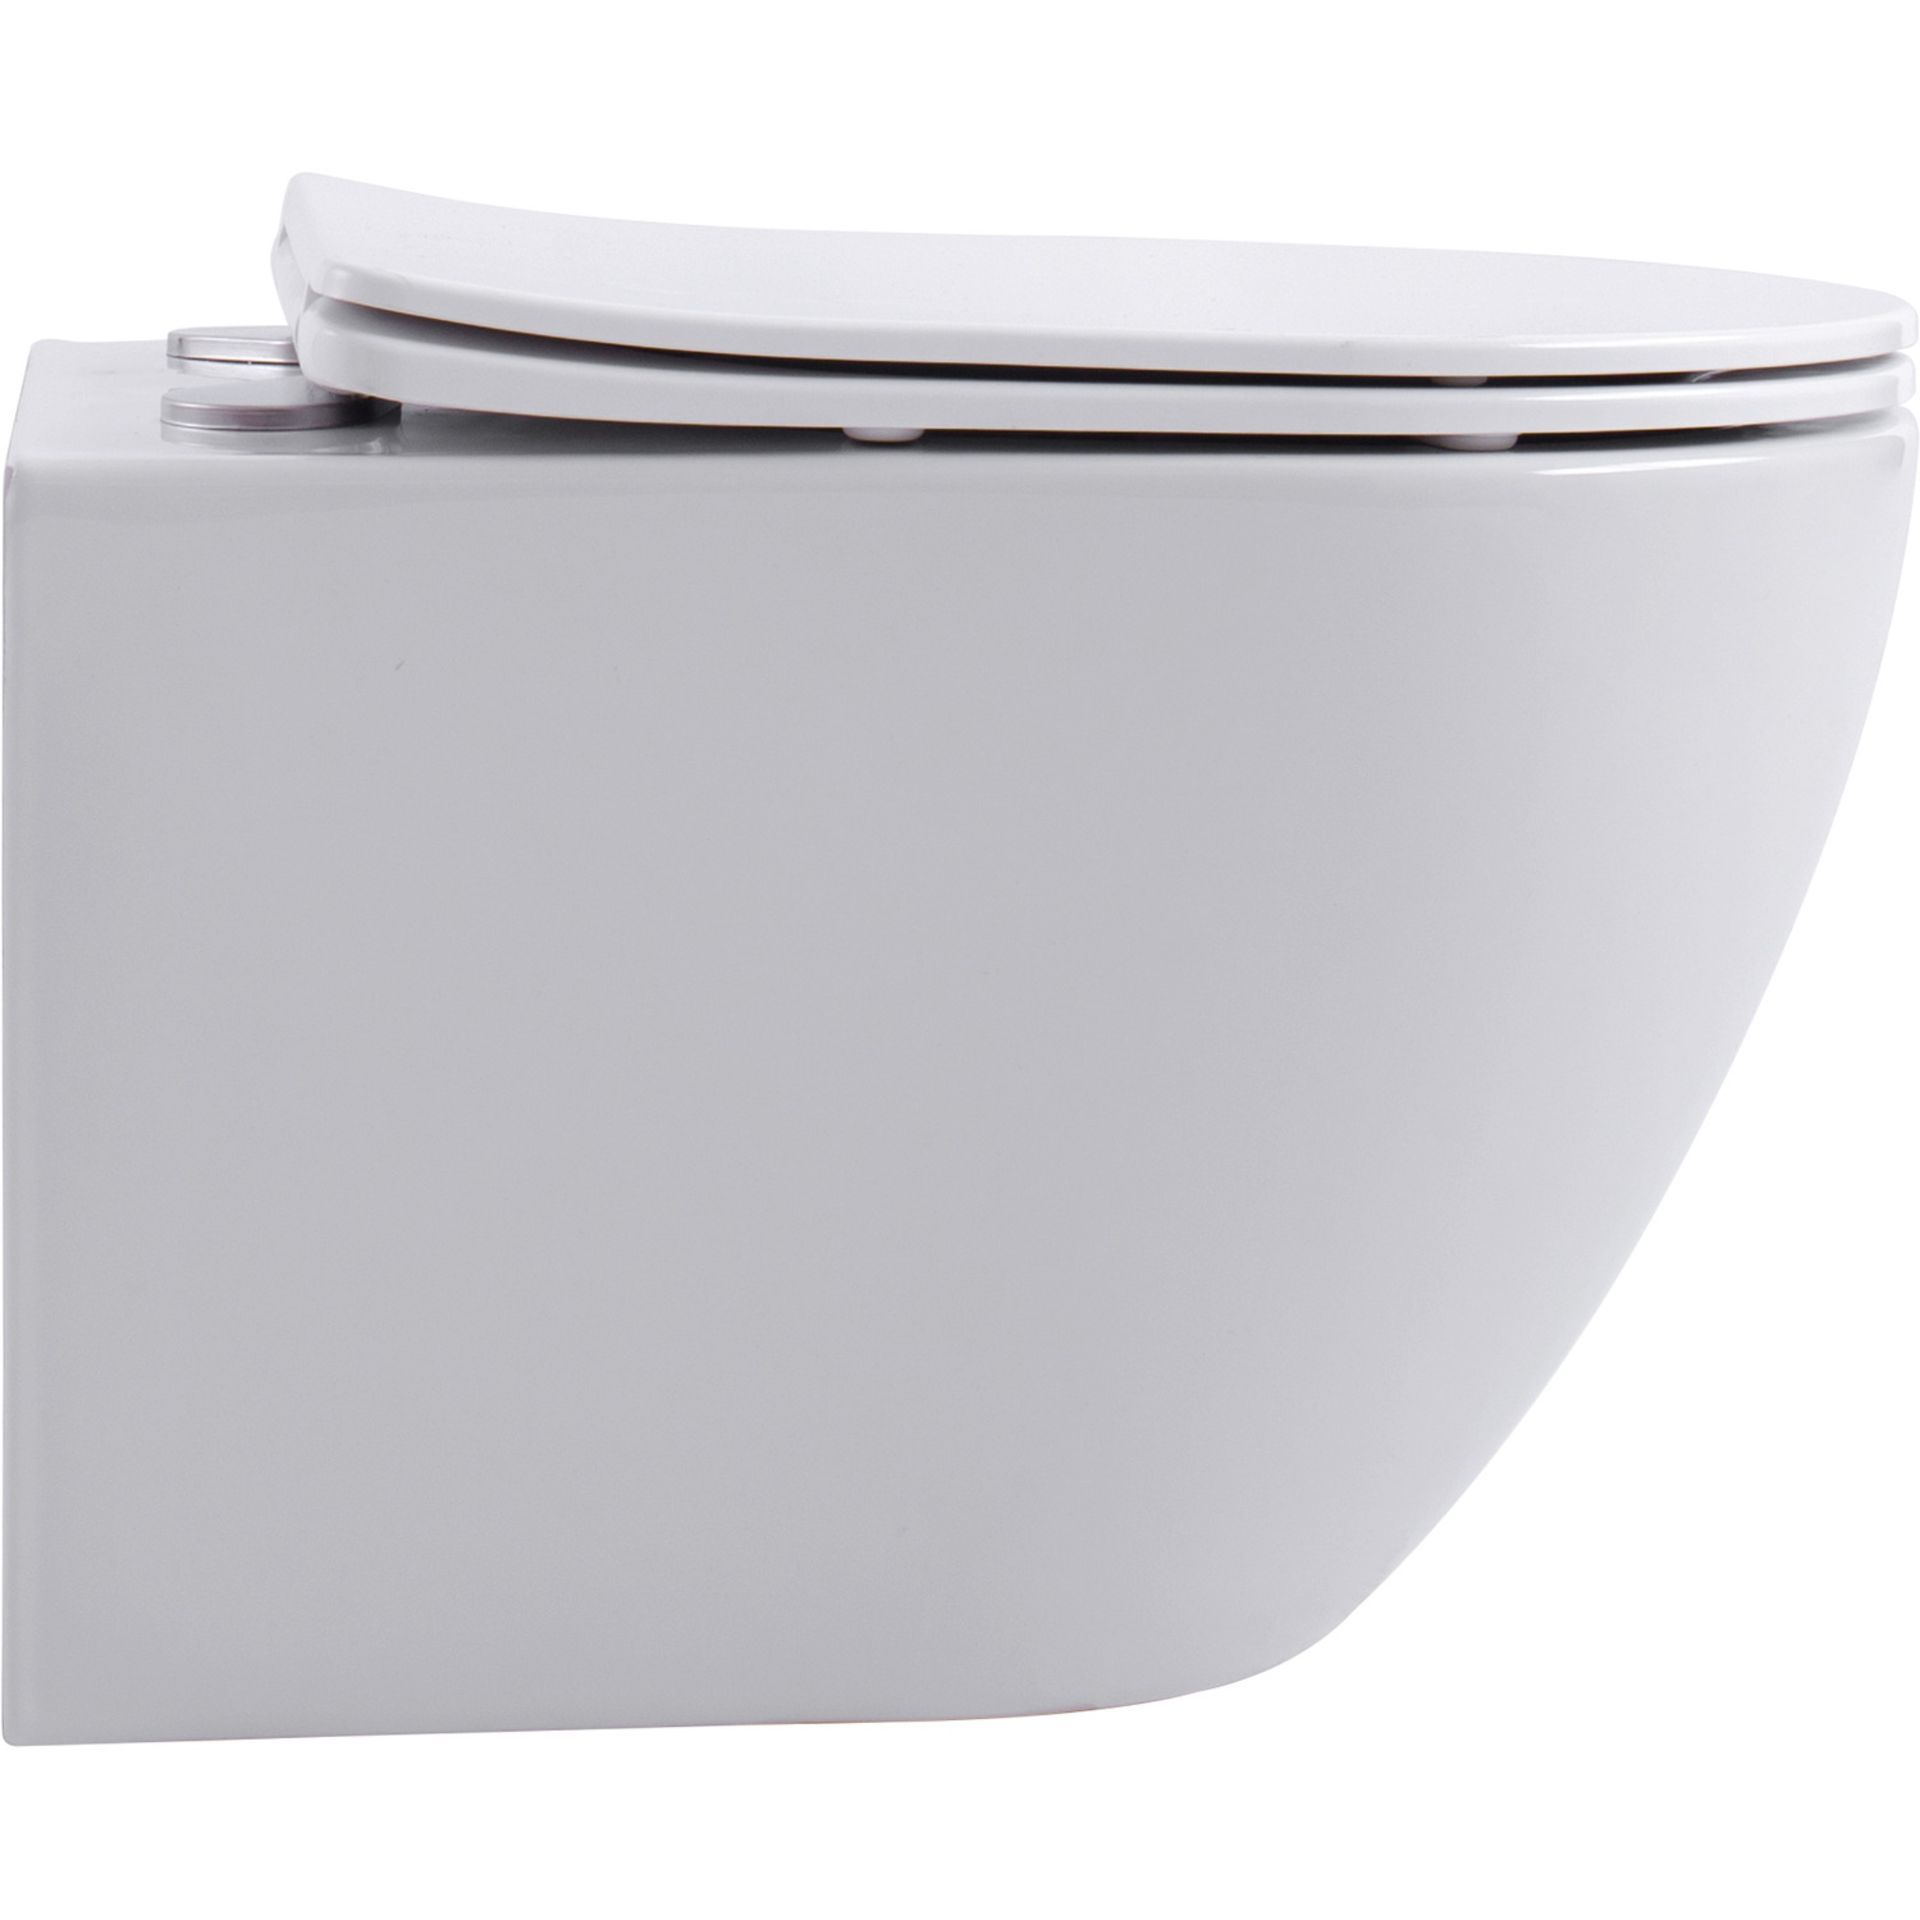 NEW & BOXED KARCENT Rimless Washdown Wall Hung Toilet. MATT WHITE. This Rimless Matt White wall-hung